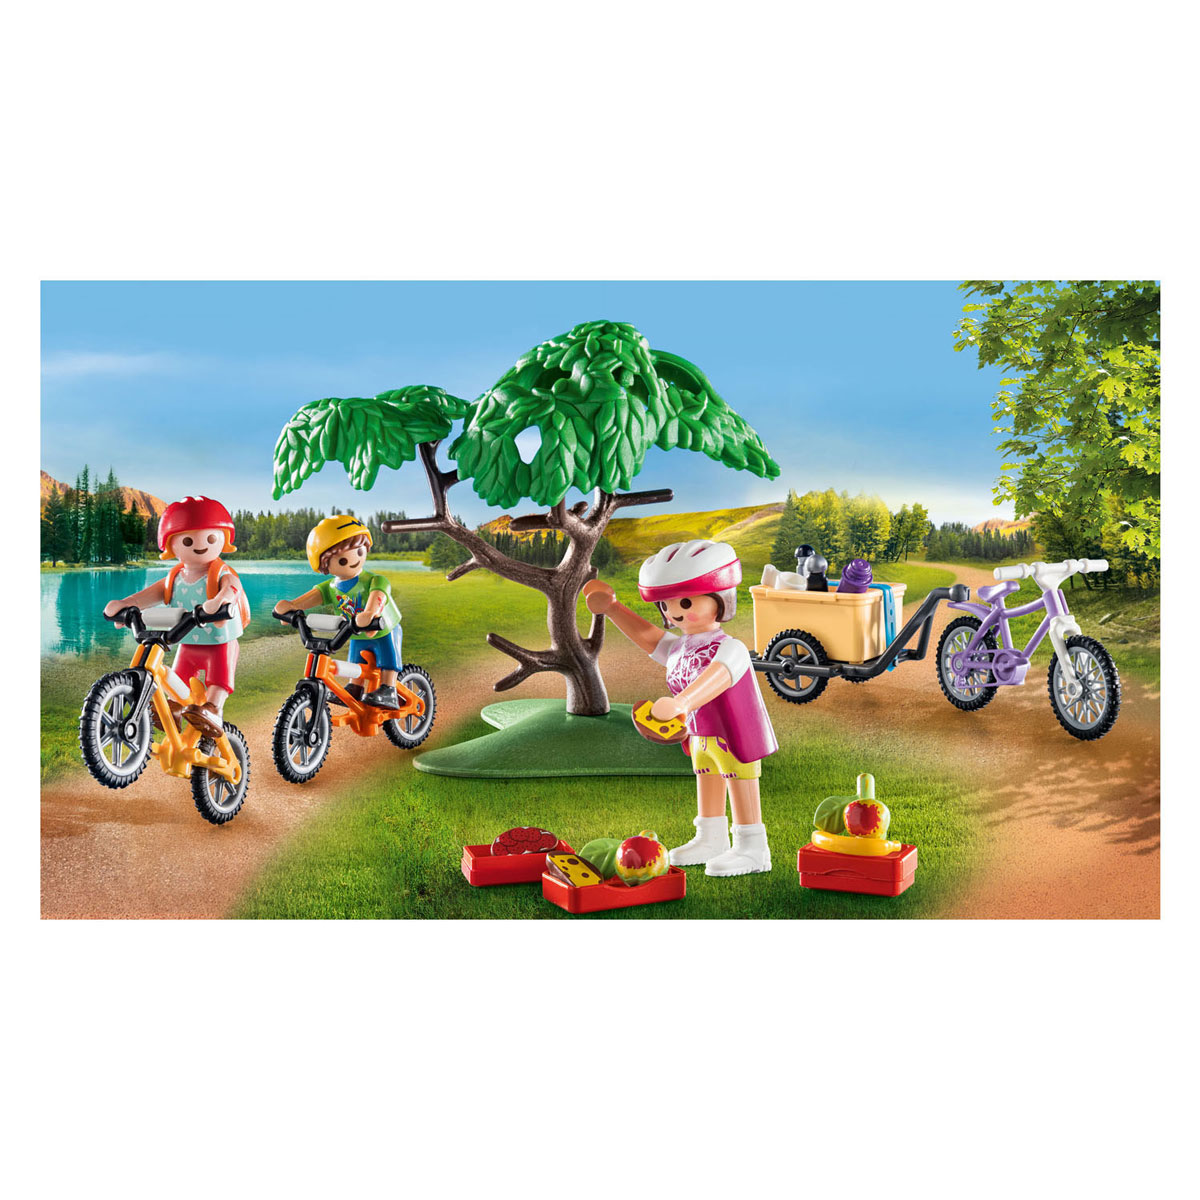 Playmobil Family Fun Mountainbike Tour - 71426